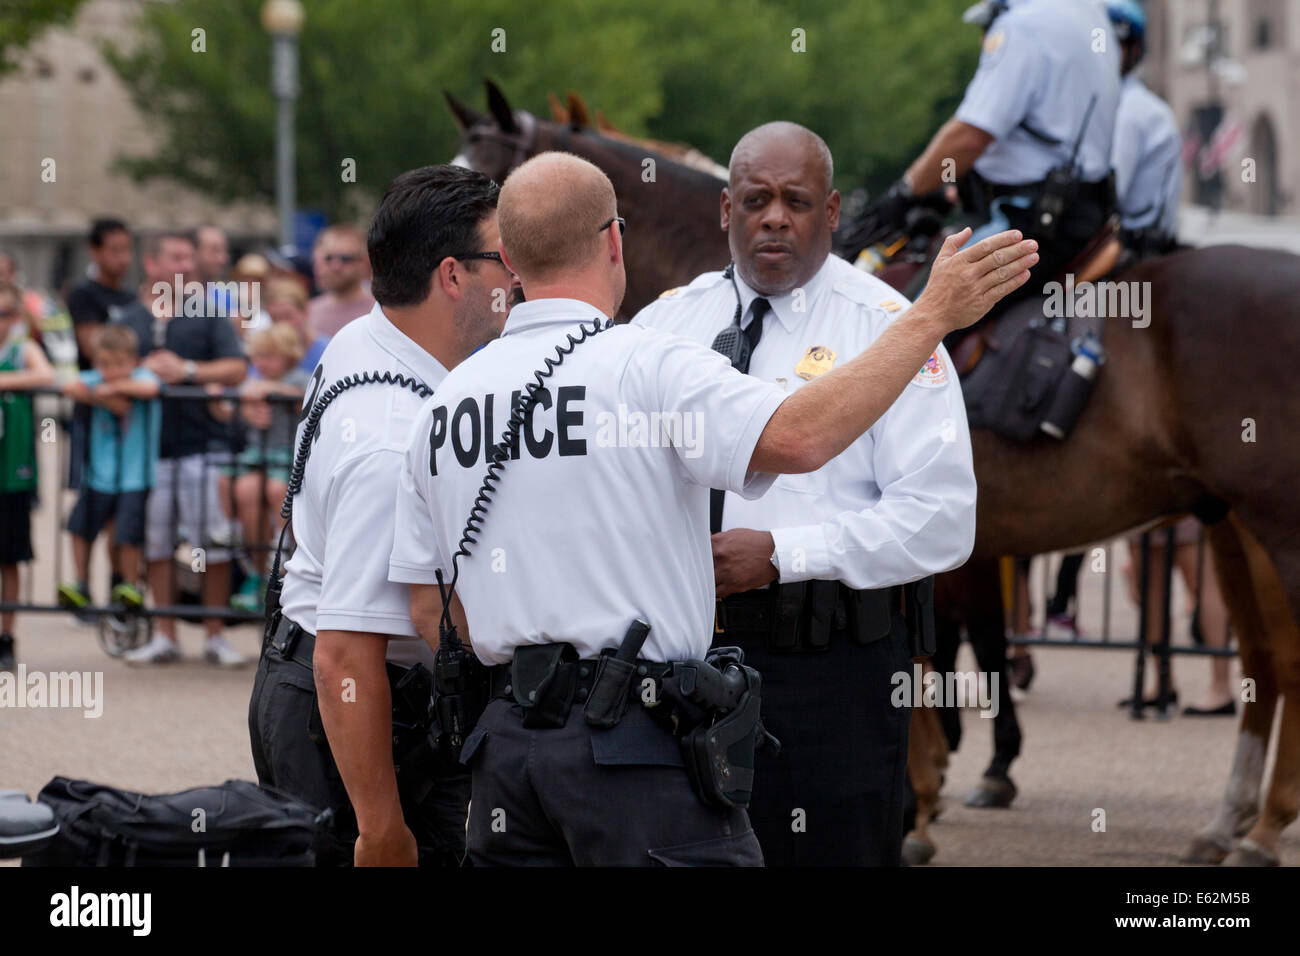 US-Geheimdienst Uniformierte Polizei bei einem Protest vor dem weißen Haus - Washington, DC USA Stockfoto